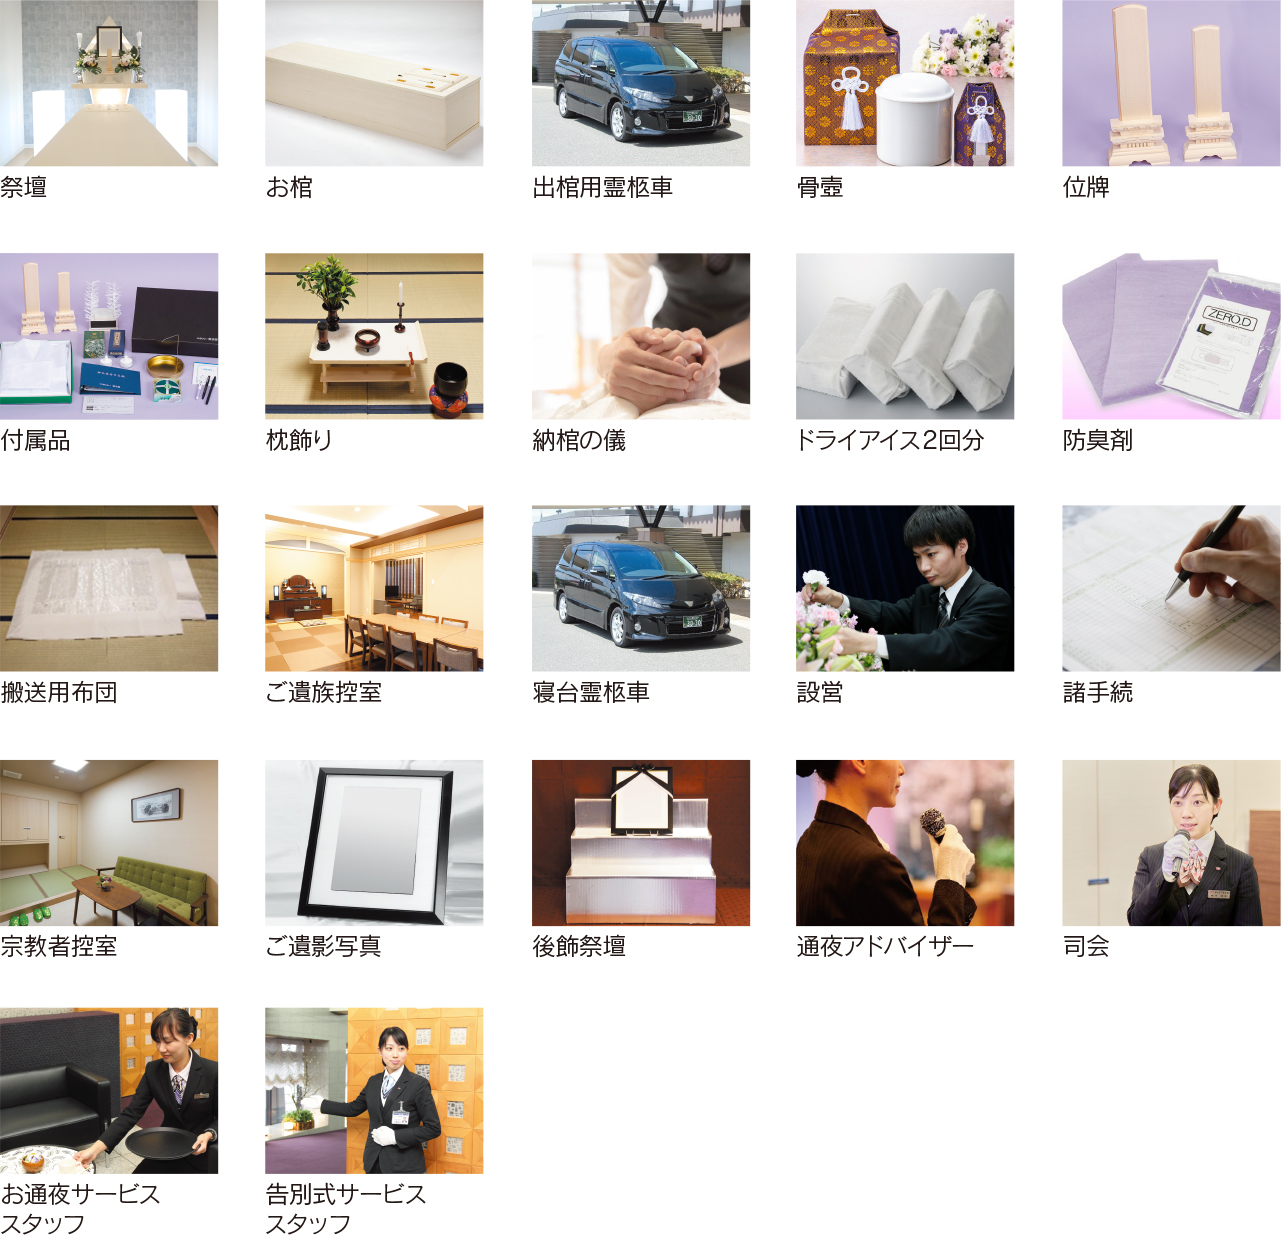 福岡、香椎、多々良、浦田近郊で葬儀、葬式、葬儀場の事ならサンレー紫雲閣 福岡 ご葬儀の内容写真